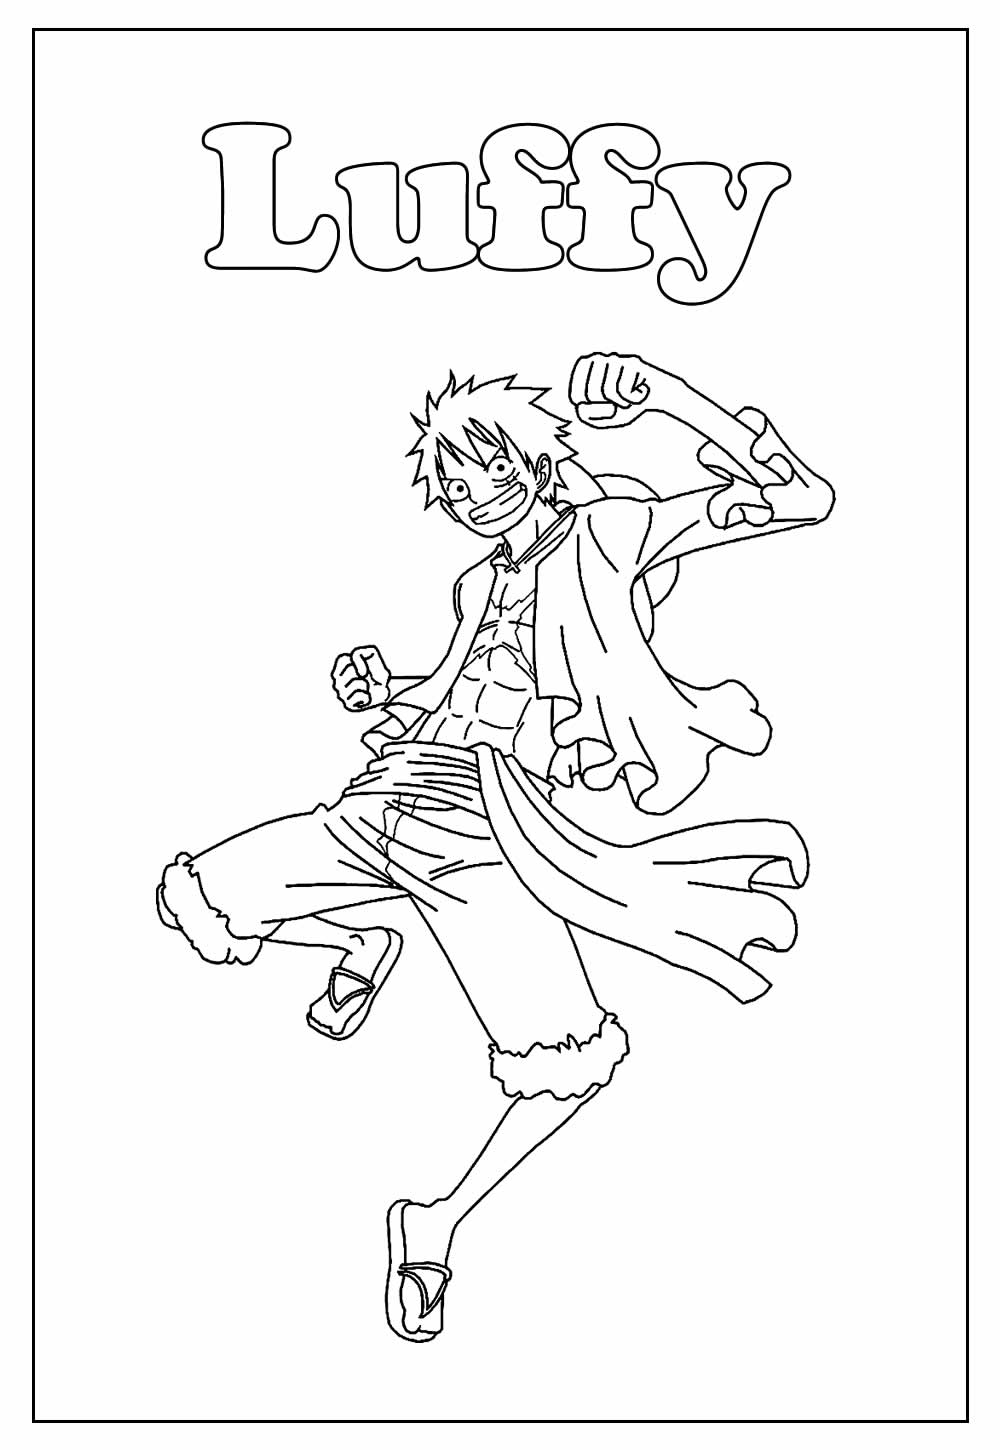 Desenho Educativo de Luffy para colorir